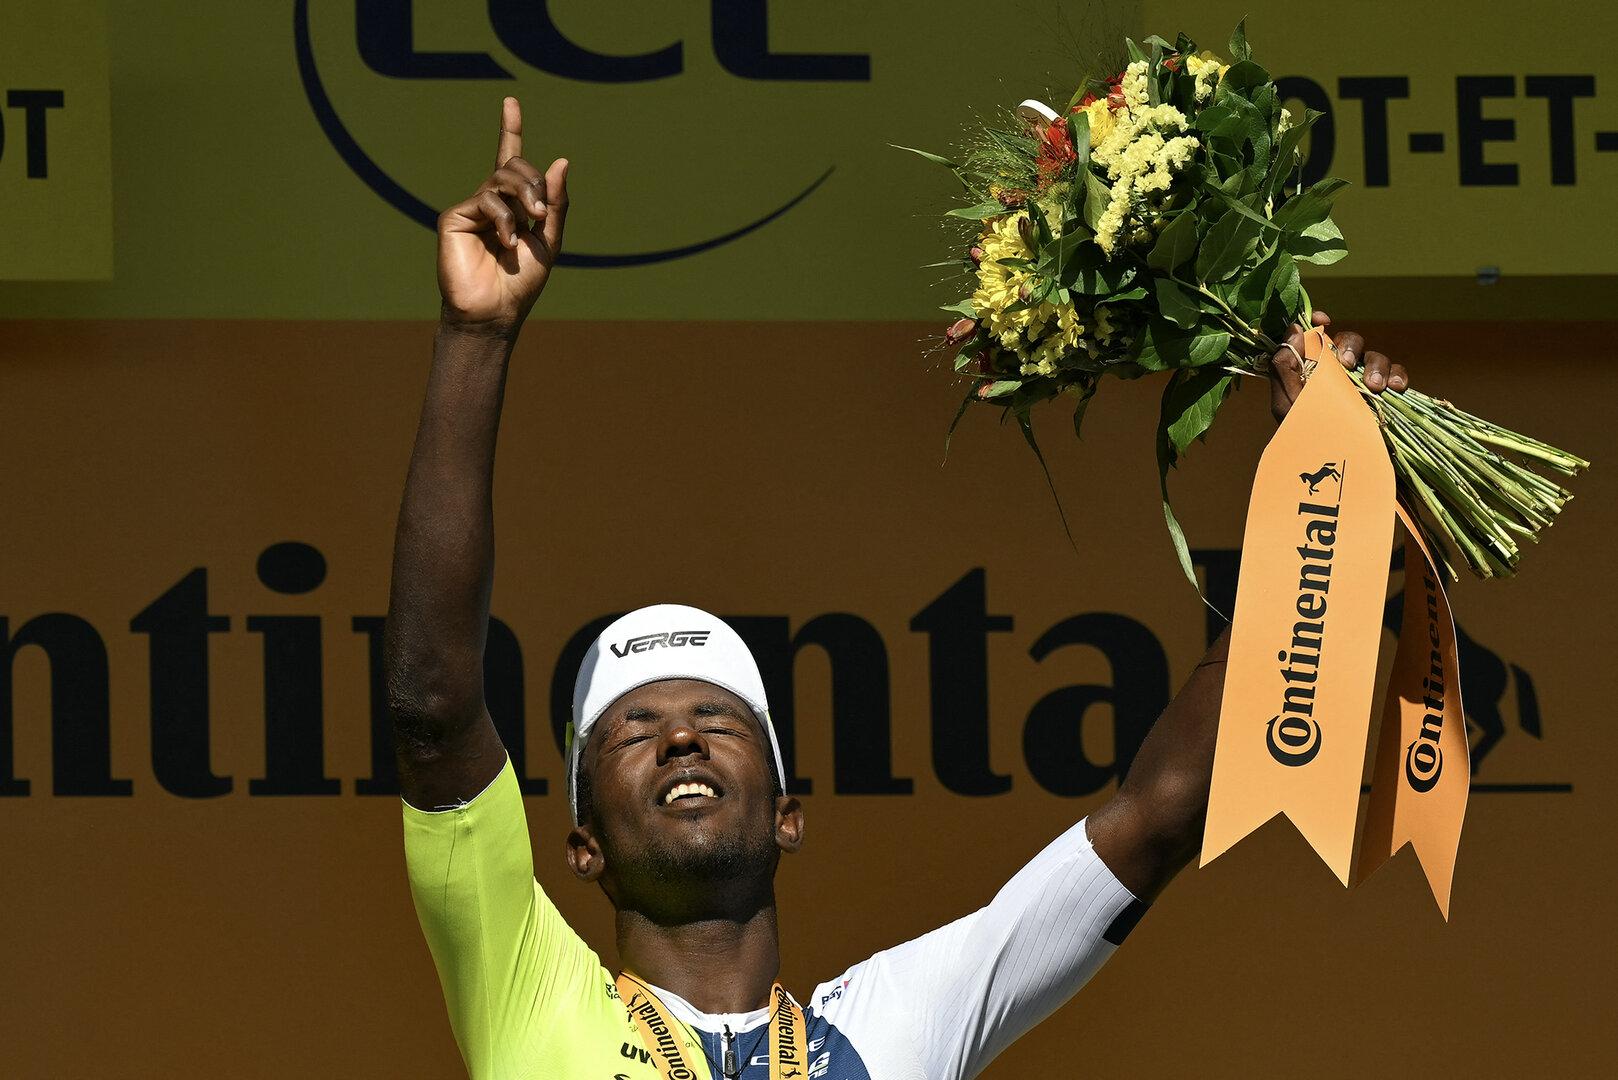 Tour de France: Dritter Streich von Sprinter Girmay, erster Fall von Corona